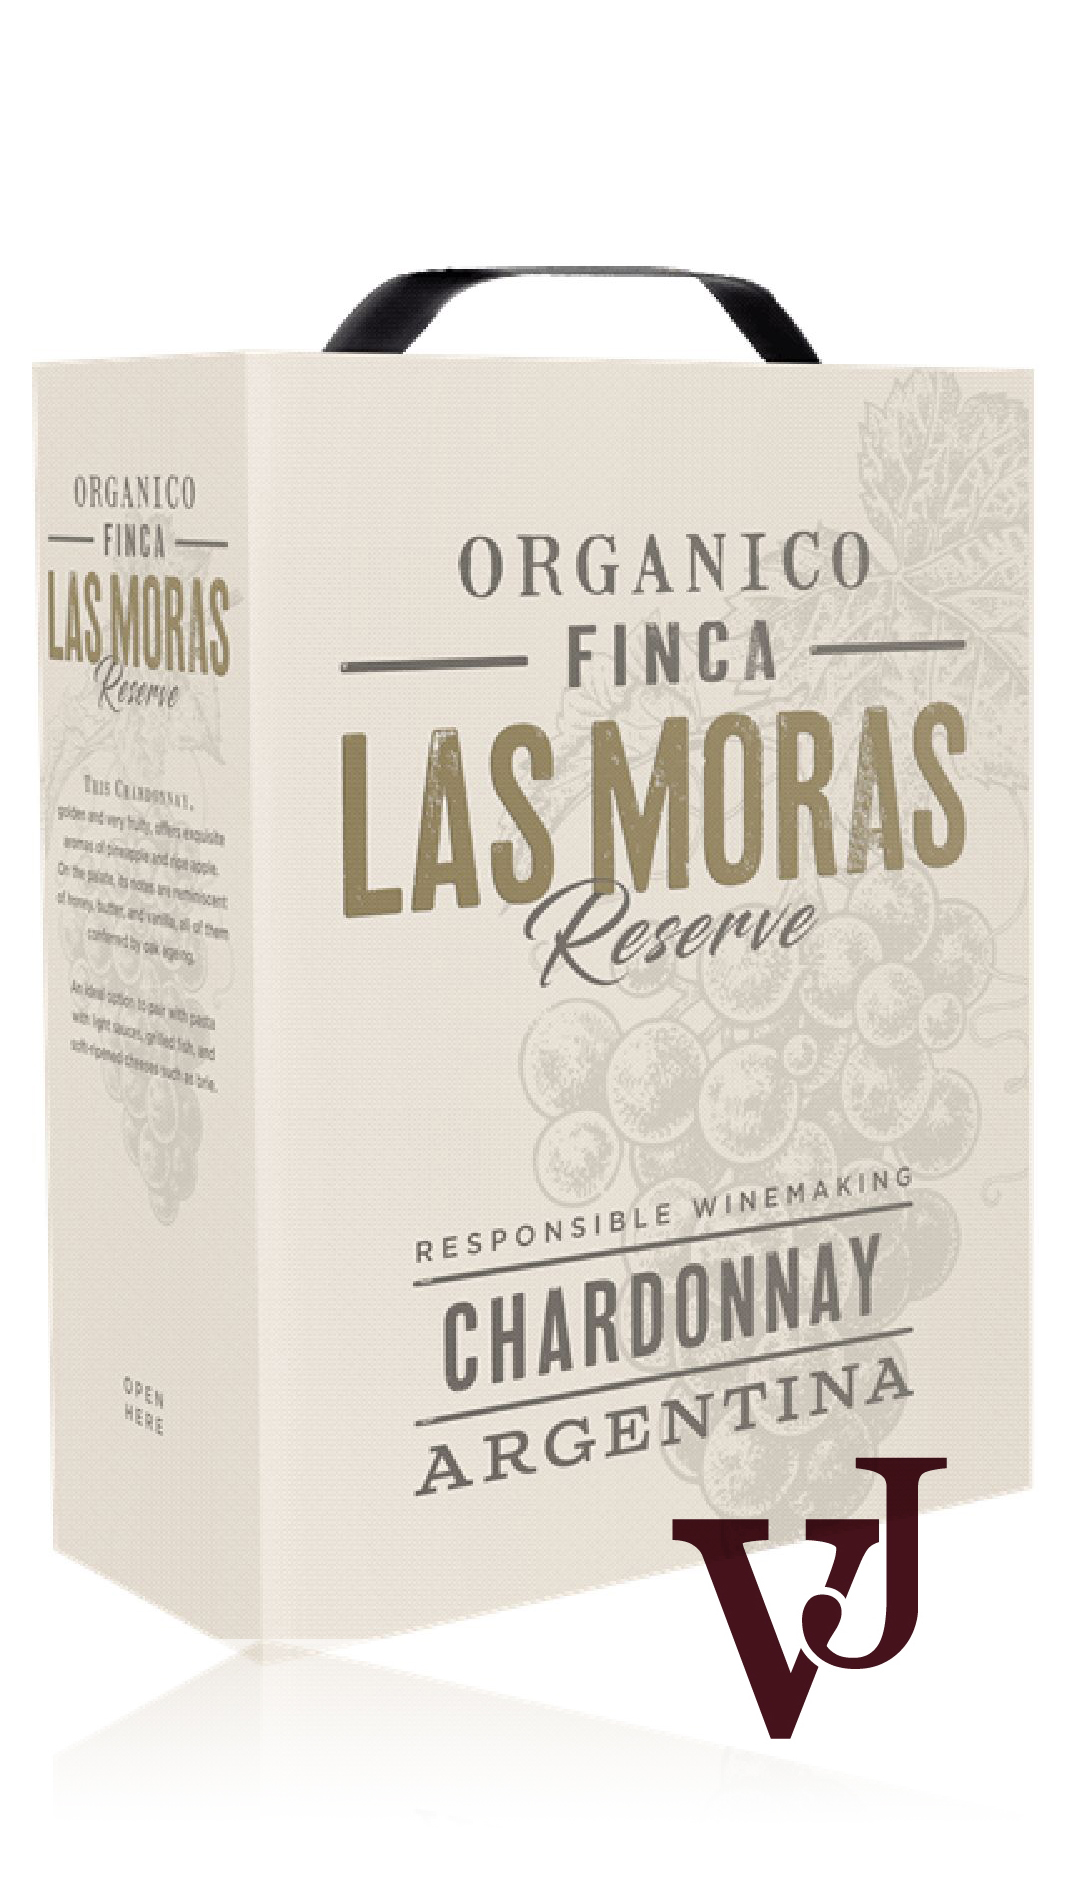 Vitt Vin - Las Moras Reserve Chardonnay artikel nummer 1601808 från producenten Finca Las Moras från området Argentina